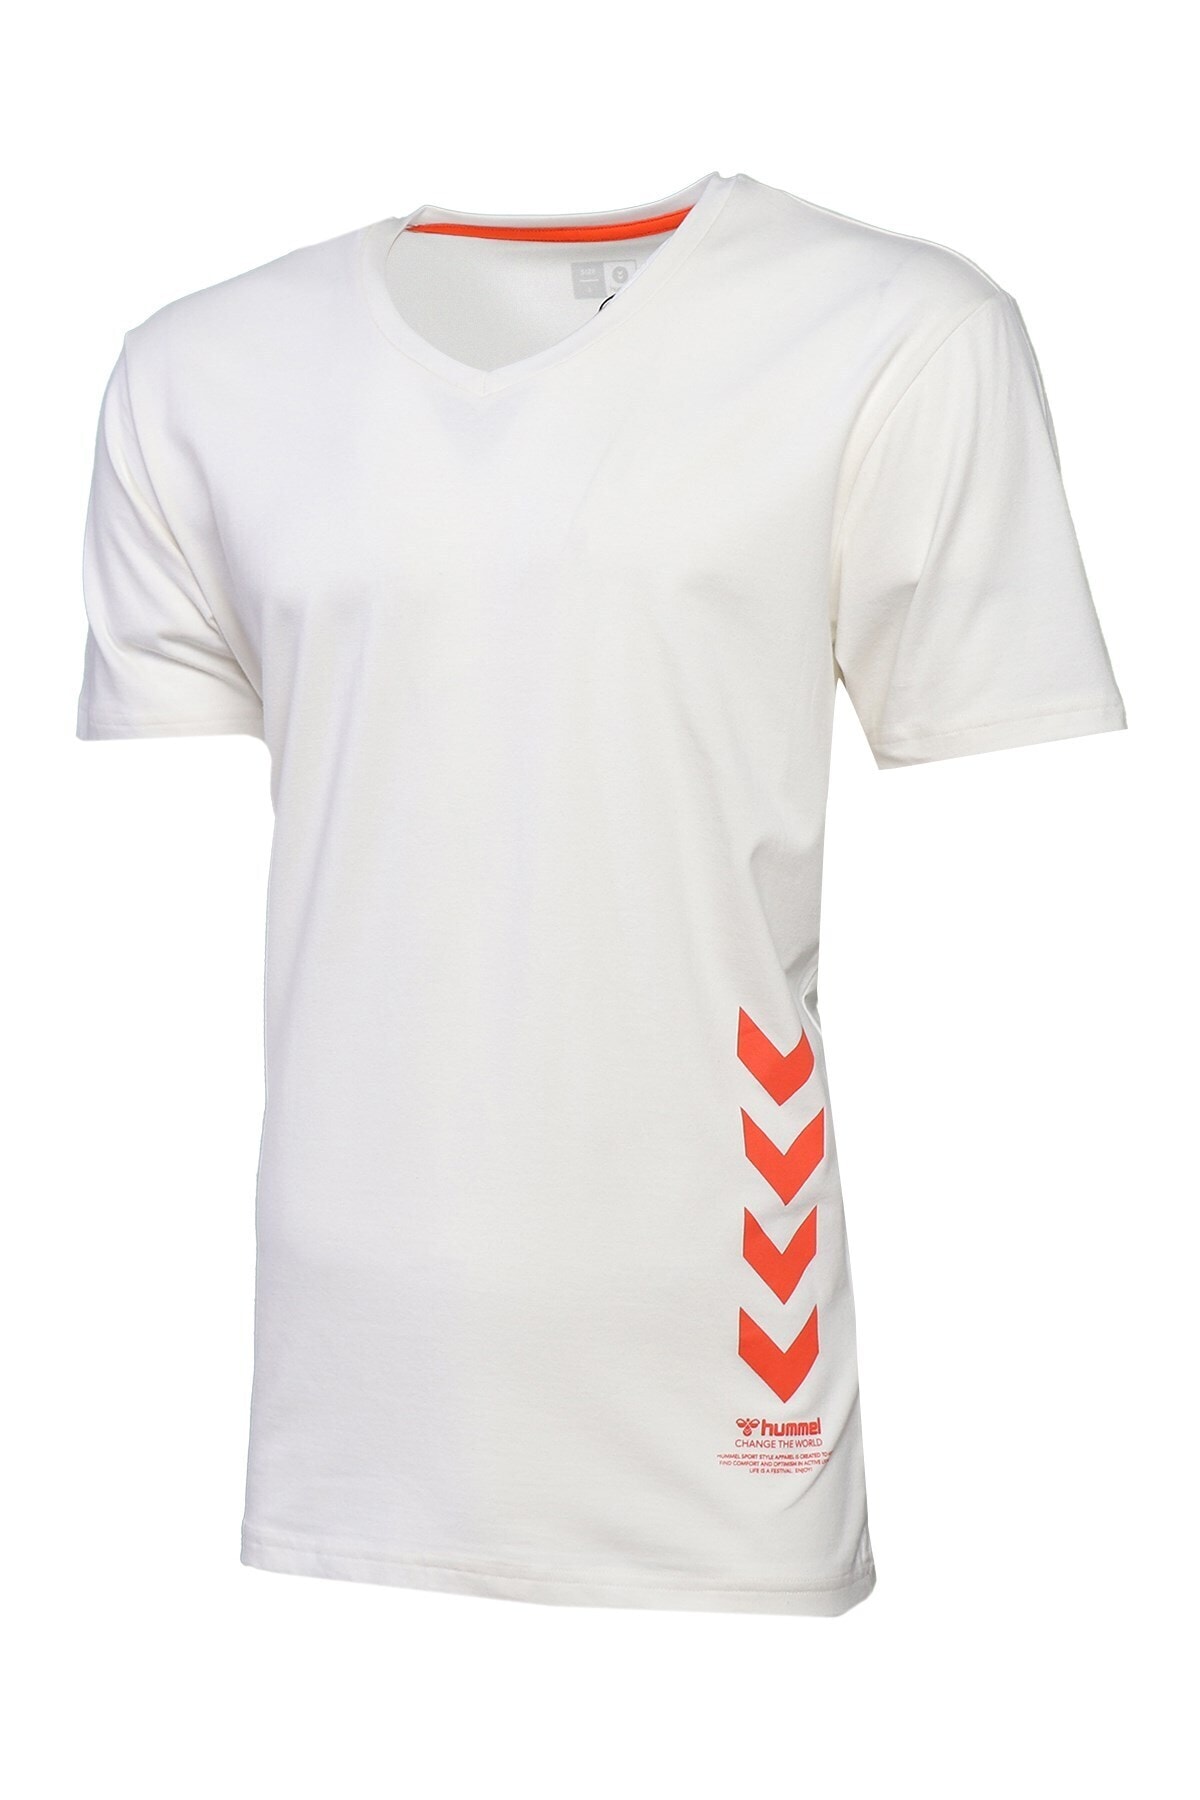 HUMMEL 911321 Erkek Beyaz Spor Tişört Kaıser T-shırt S/s Tee